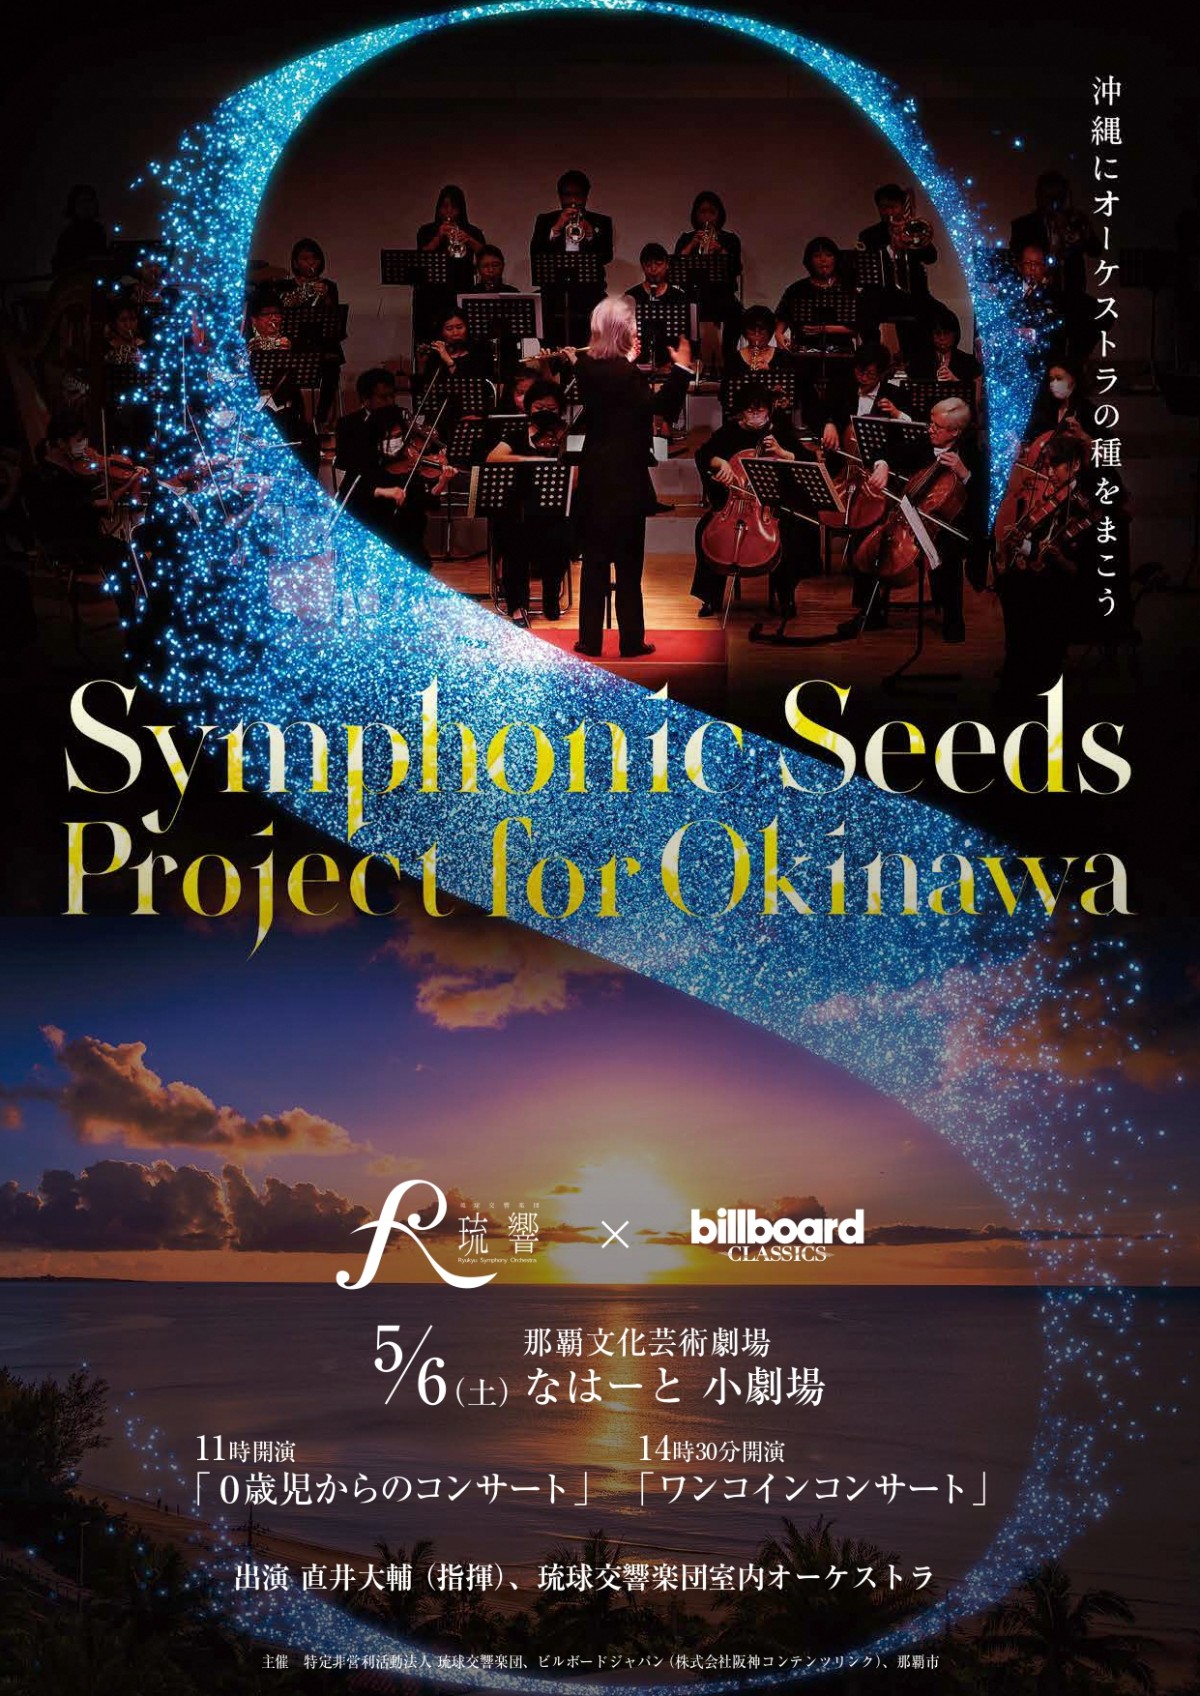 【満席御礼】Symphonic Seeds Project for Okinawa「琉球交響楽団とビルボードクラシックスがお届けするふたつのコンサート」